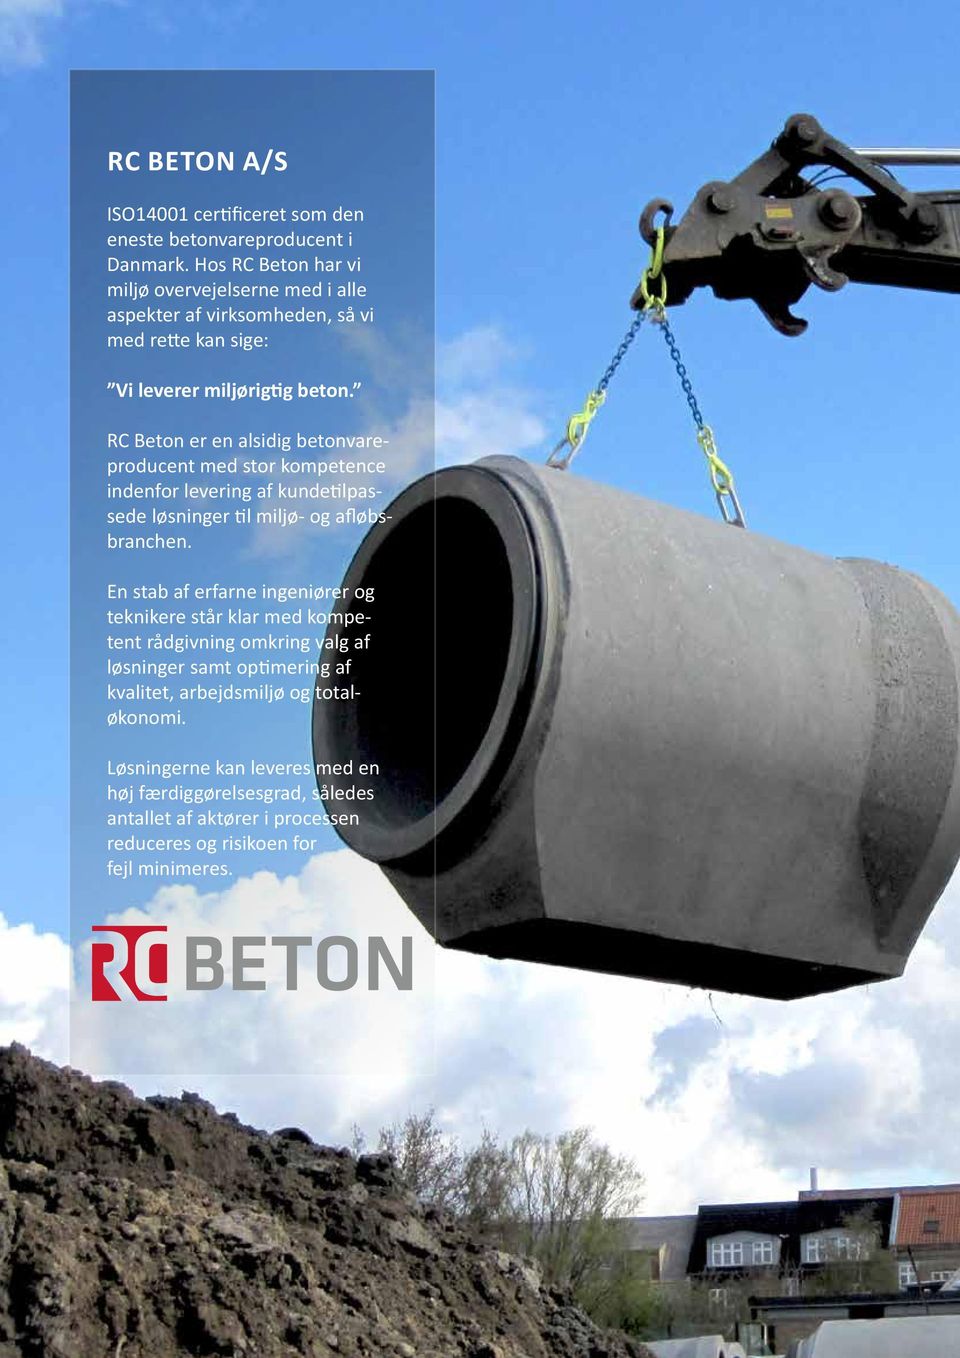 RC Beton er en alsidig betonvareproducent med stor kompetence indenfor levering af kundetilpassede løsninger til miljø- og afløbsbranchen.